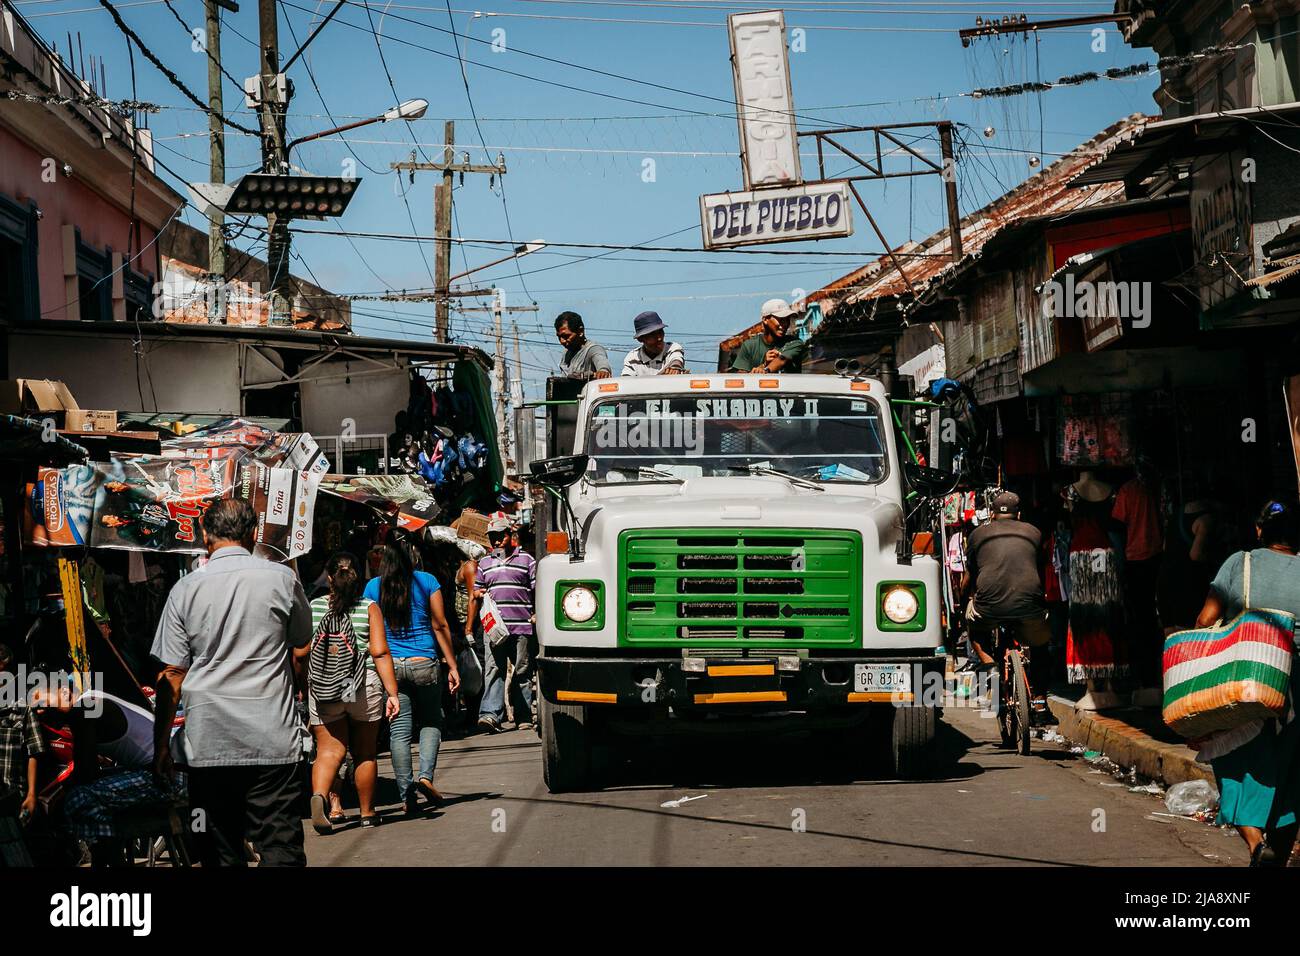 busy street scene in Granada's market, Nicaragua Stock Photo